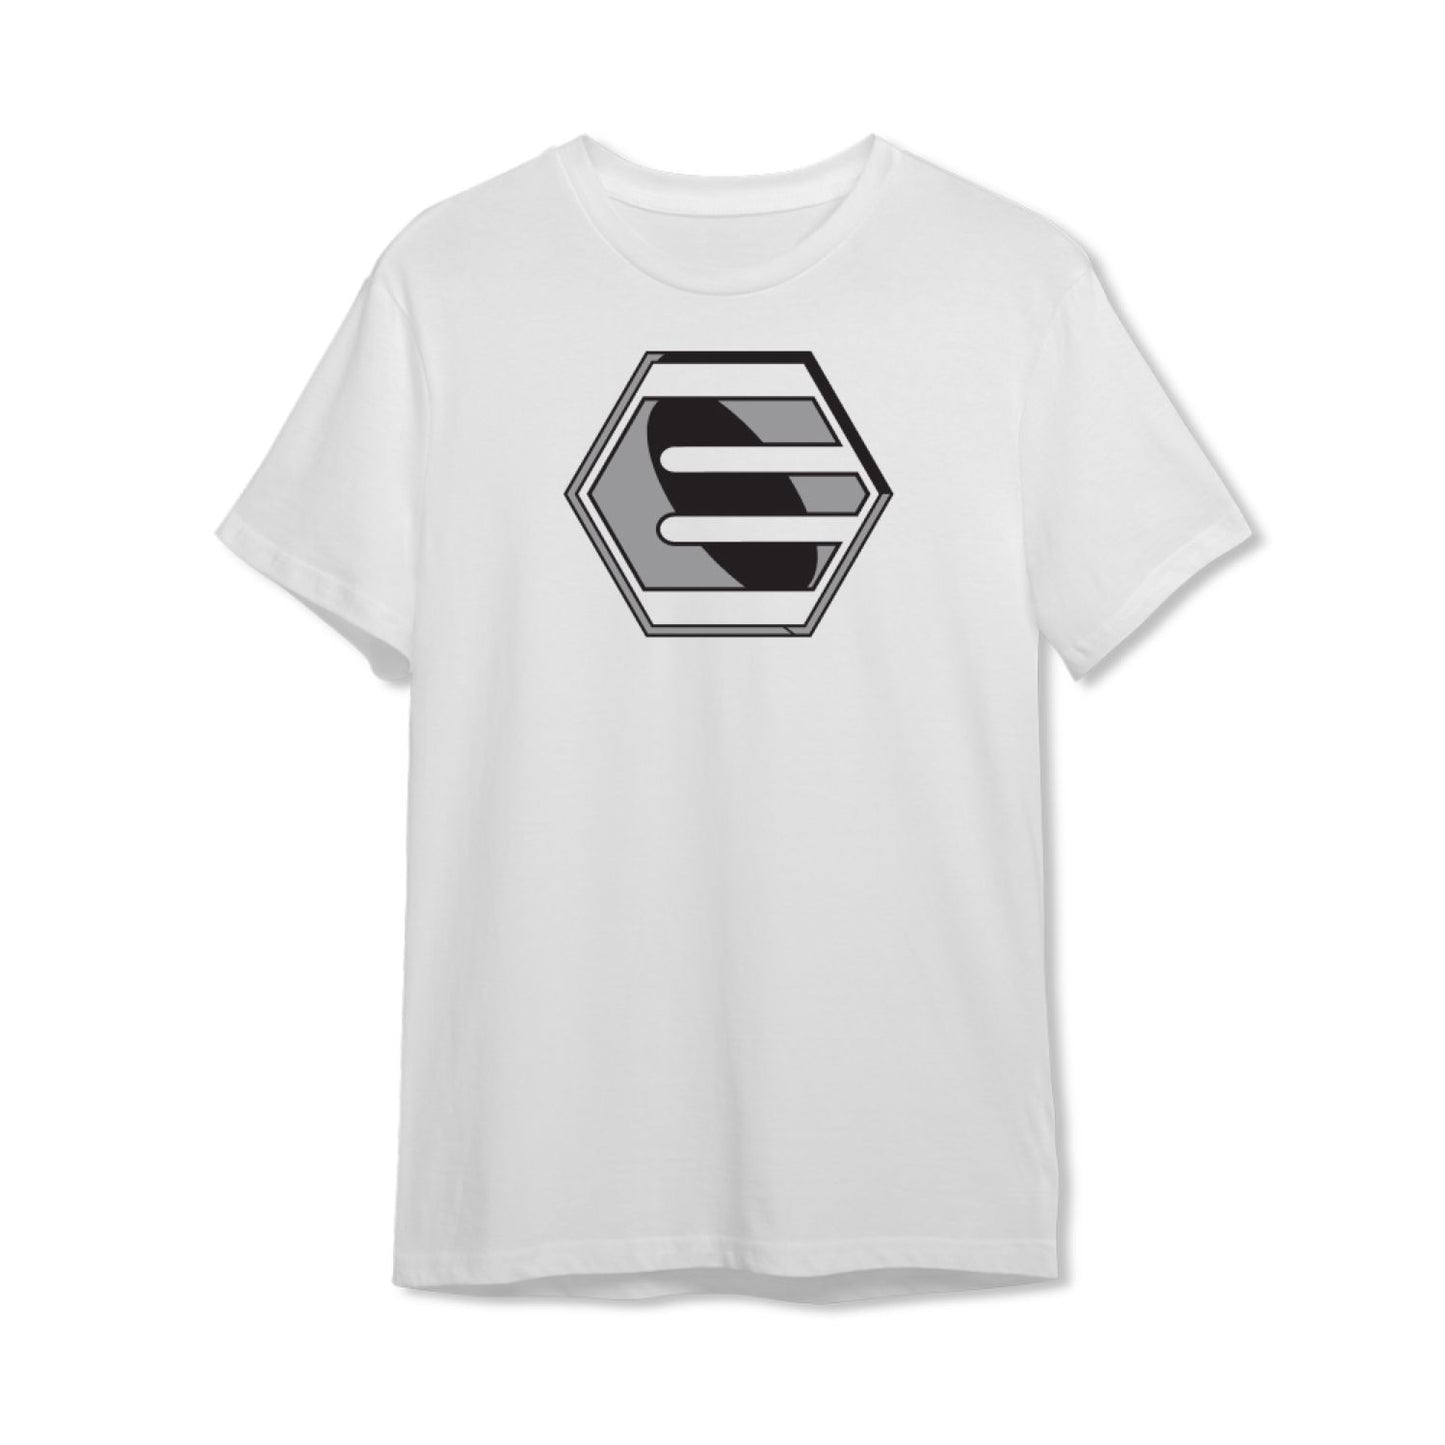 Empire T-Shirt - White